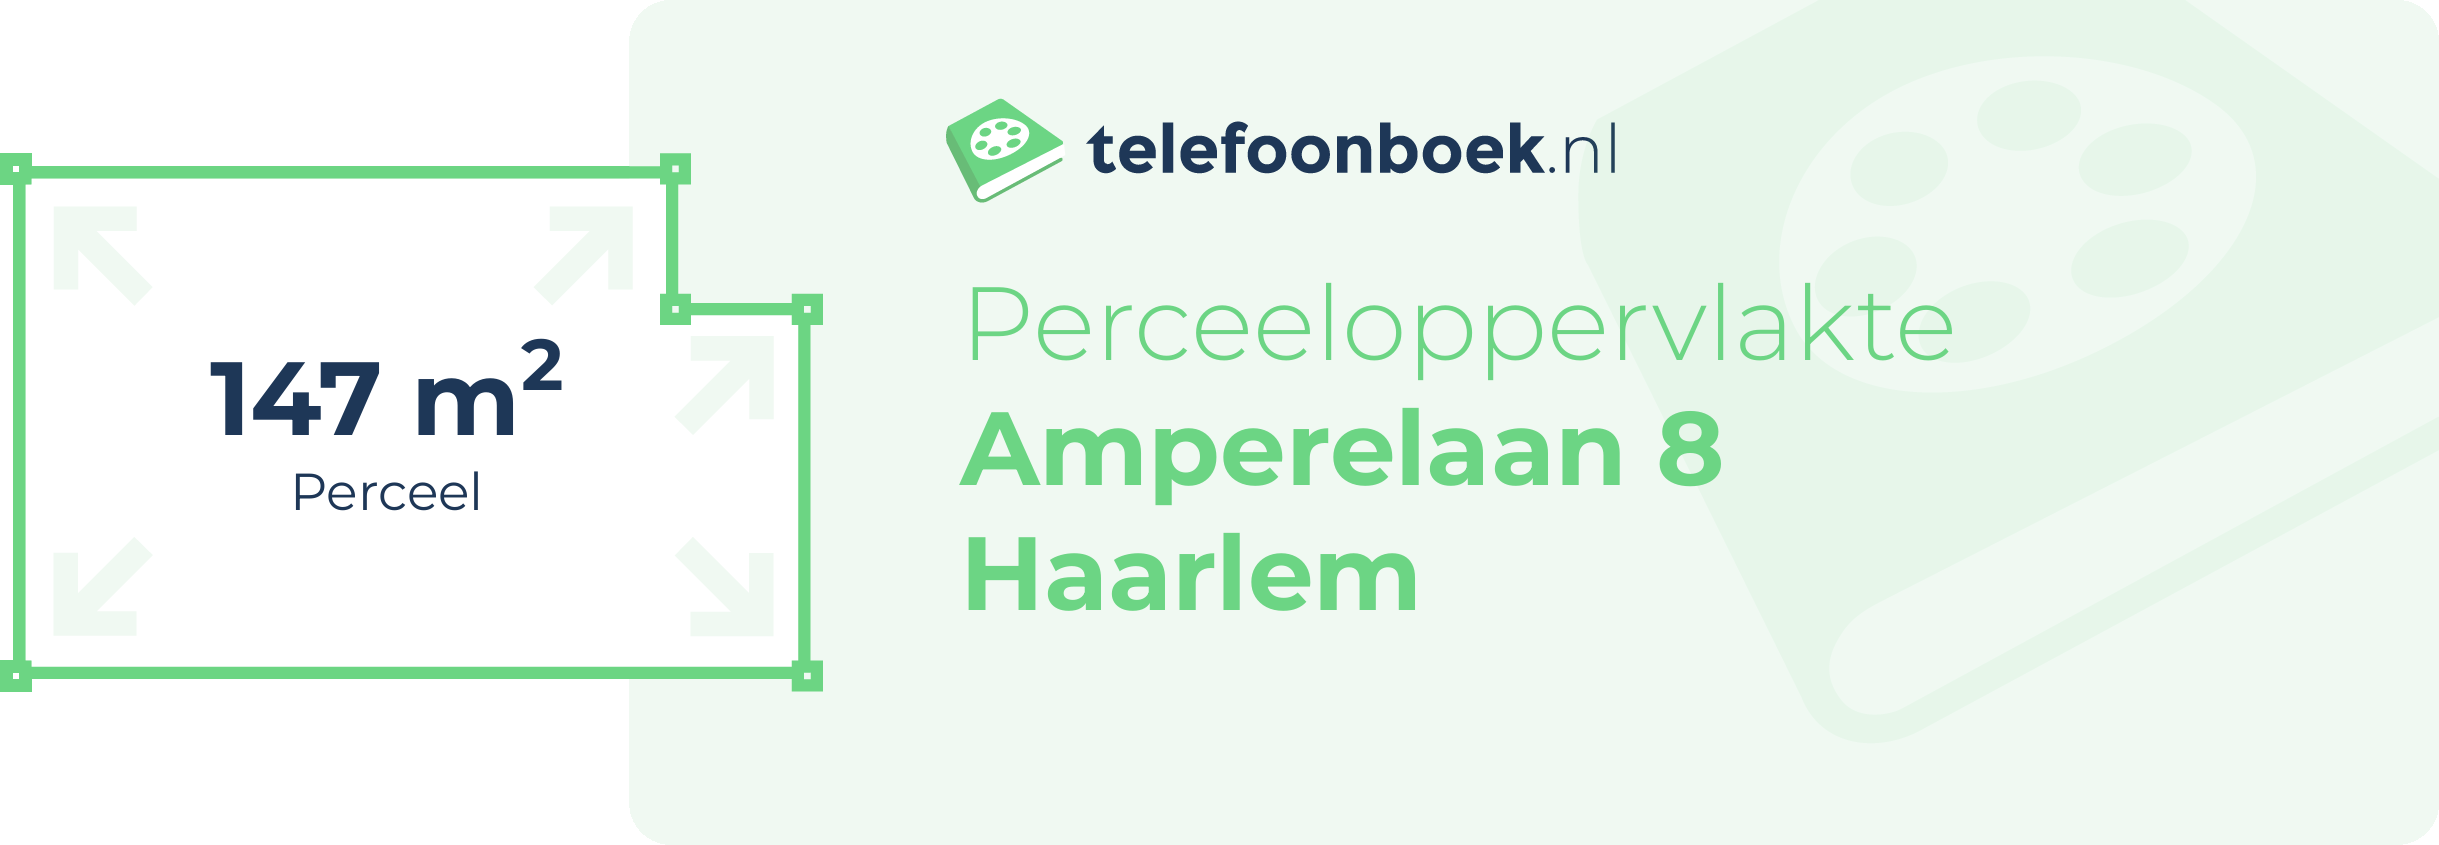 Perceeloppervlakte Amperelaan 8 Haarlem